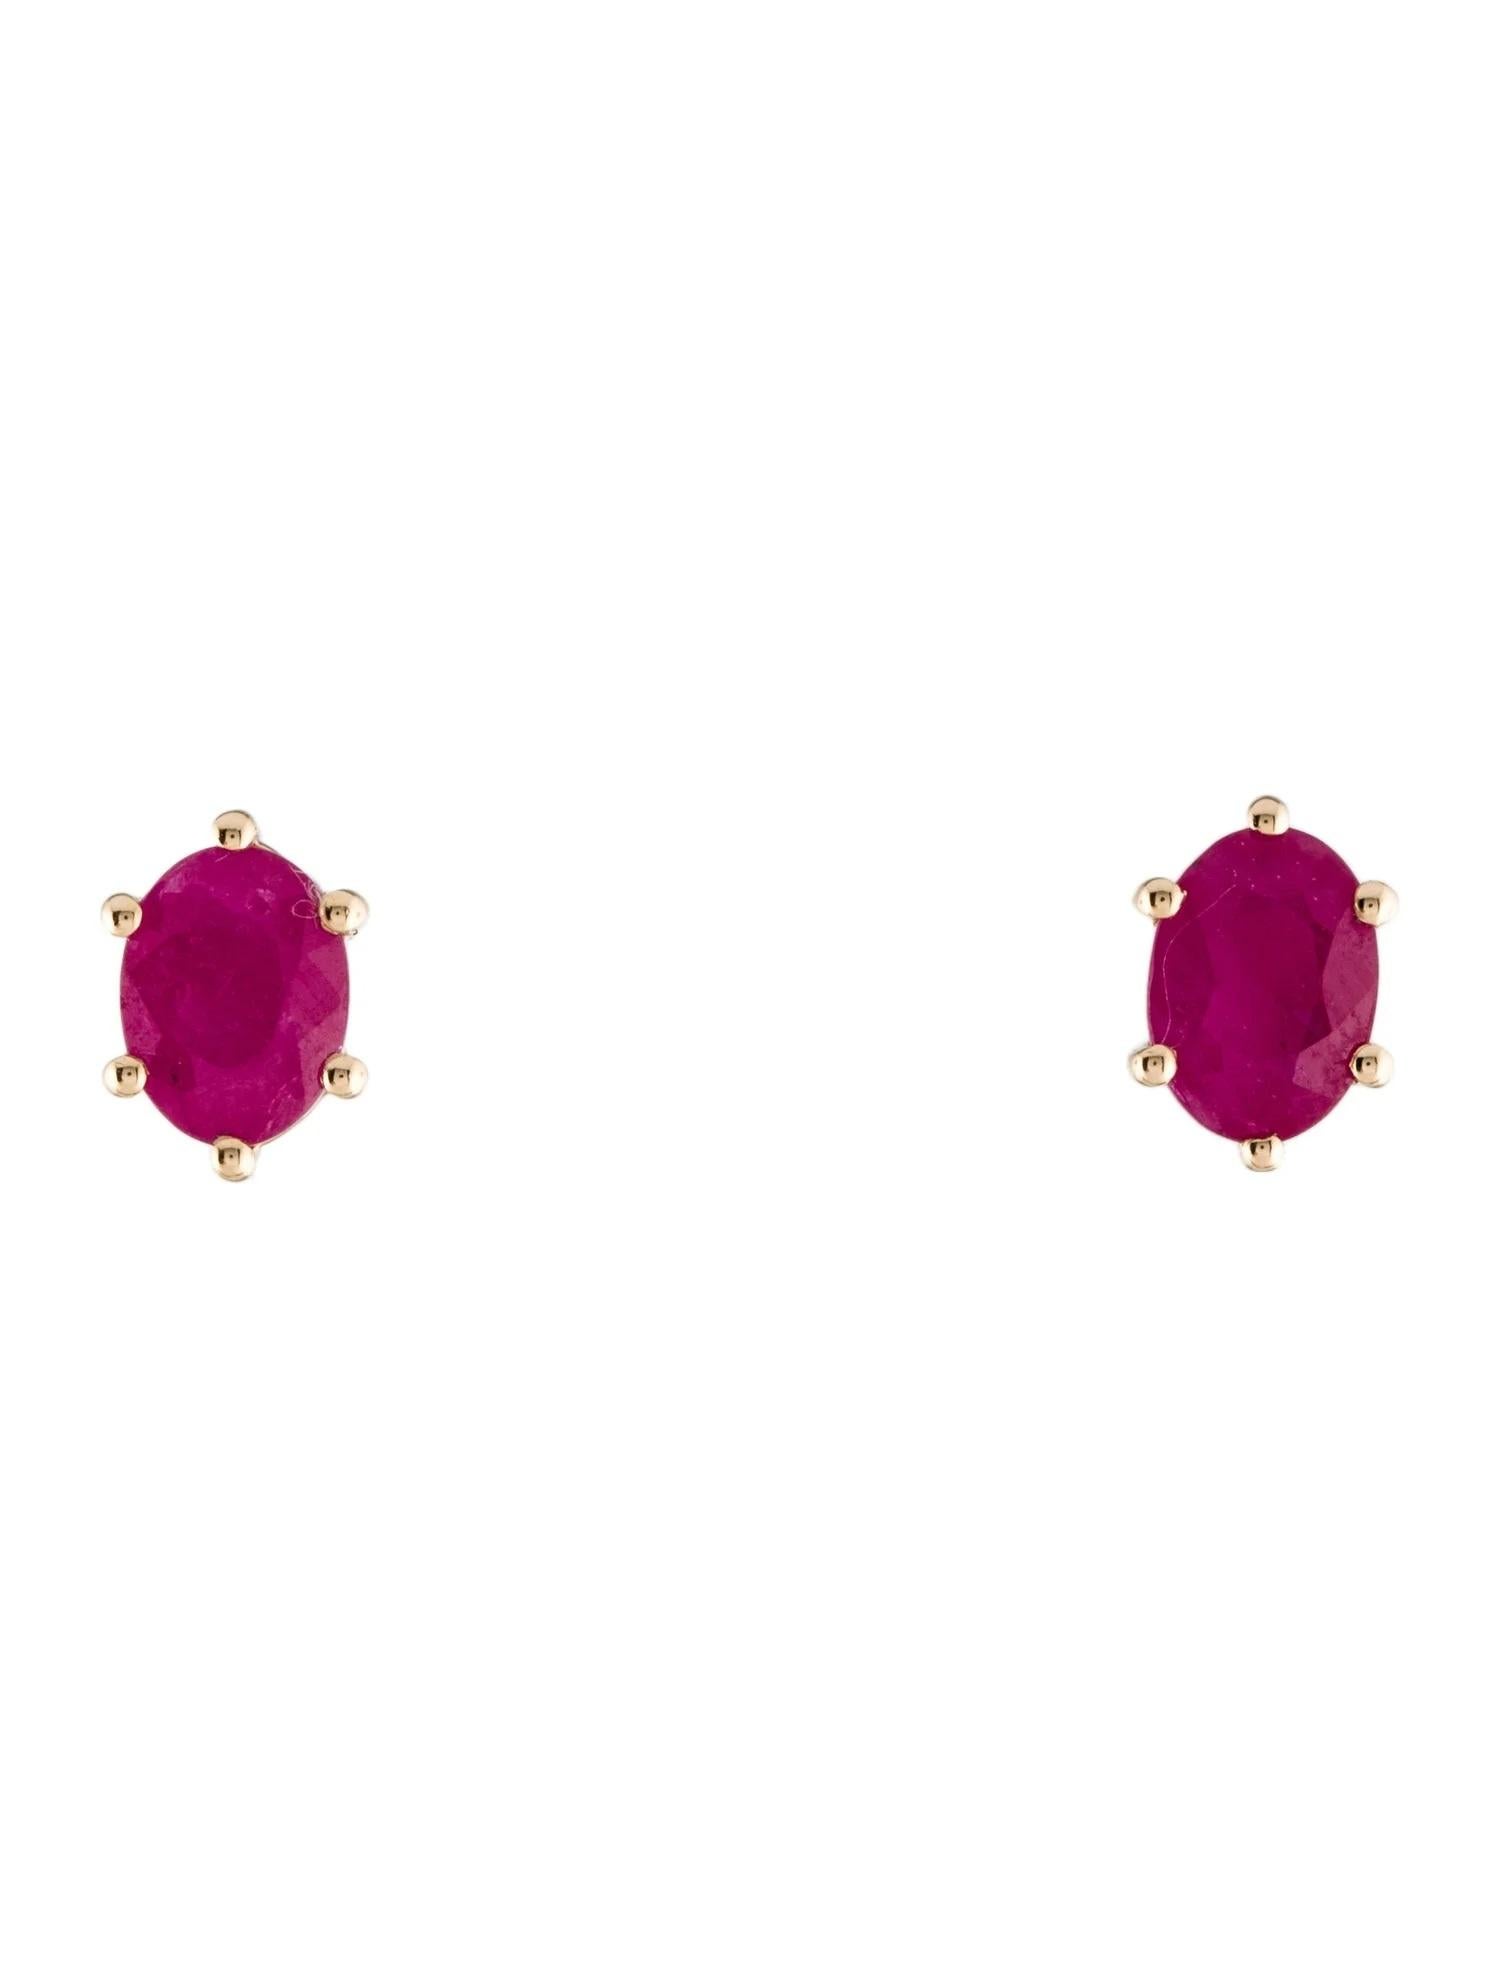 Oval Cut 14K Ruby Stud Earrings For Sale